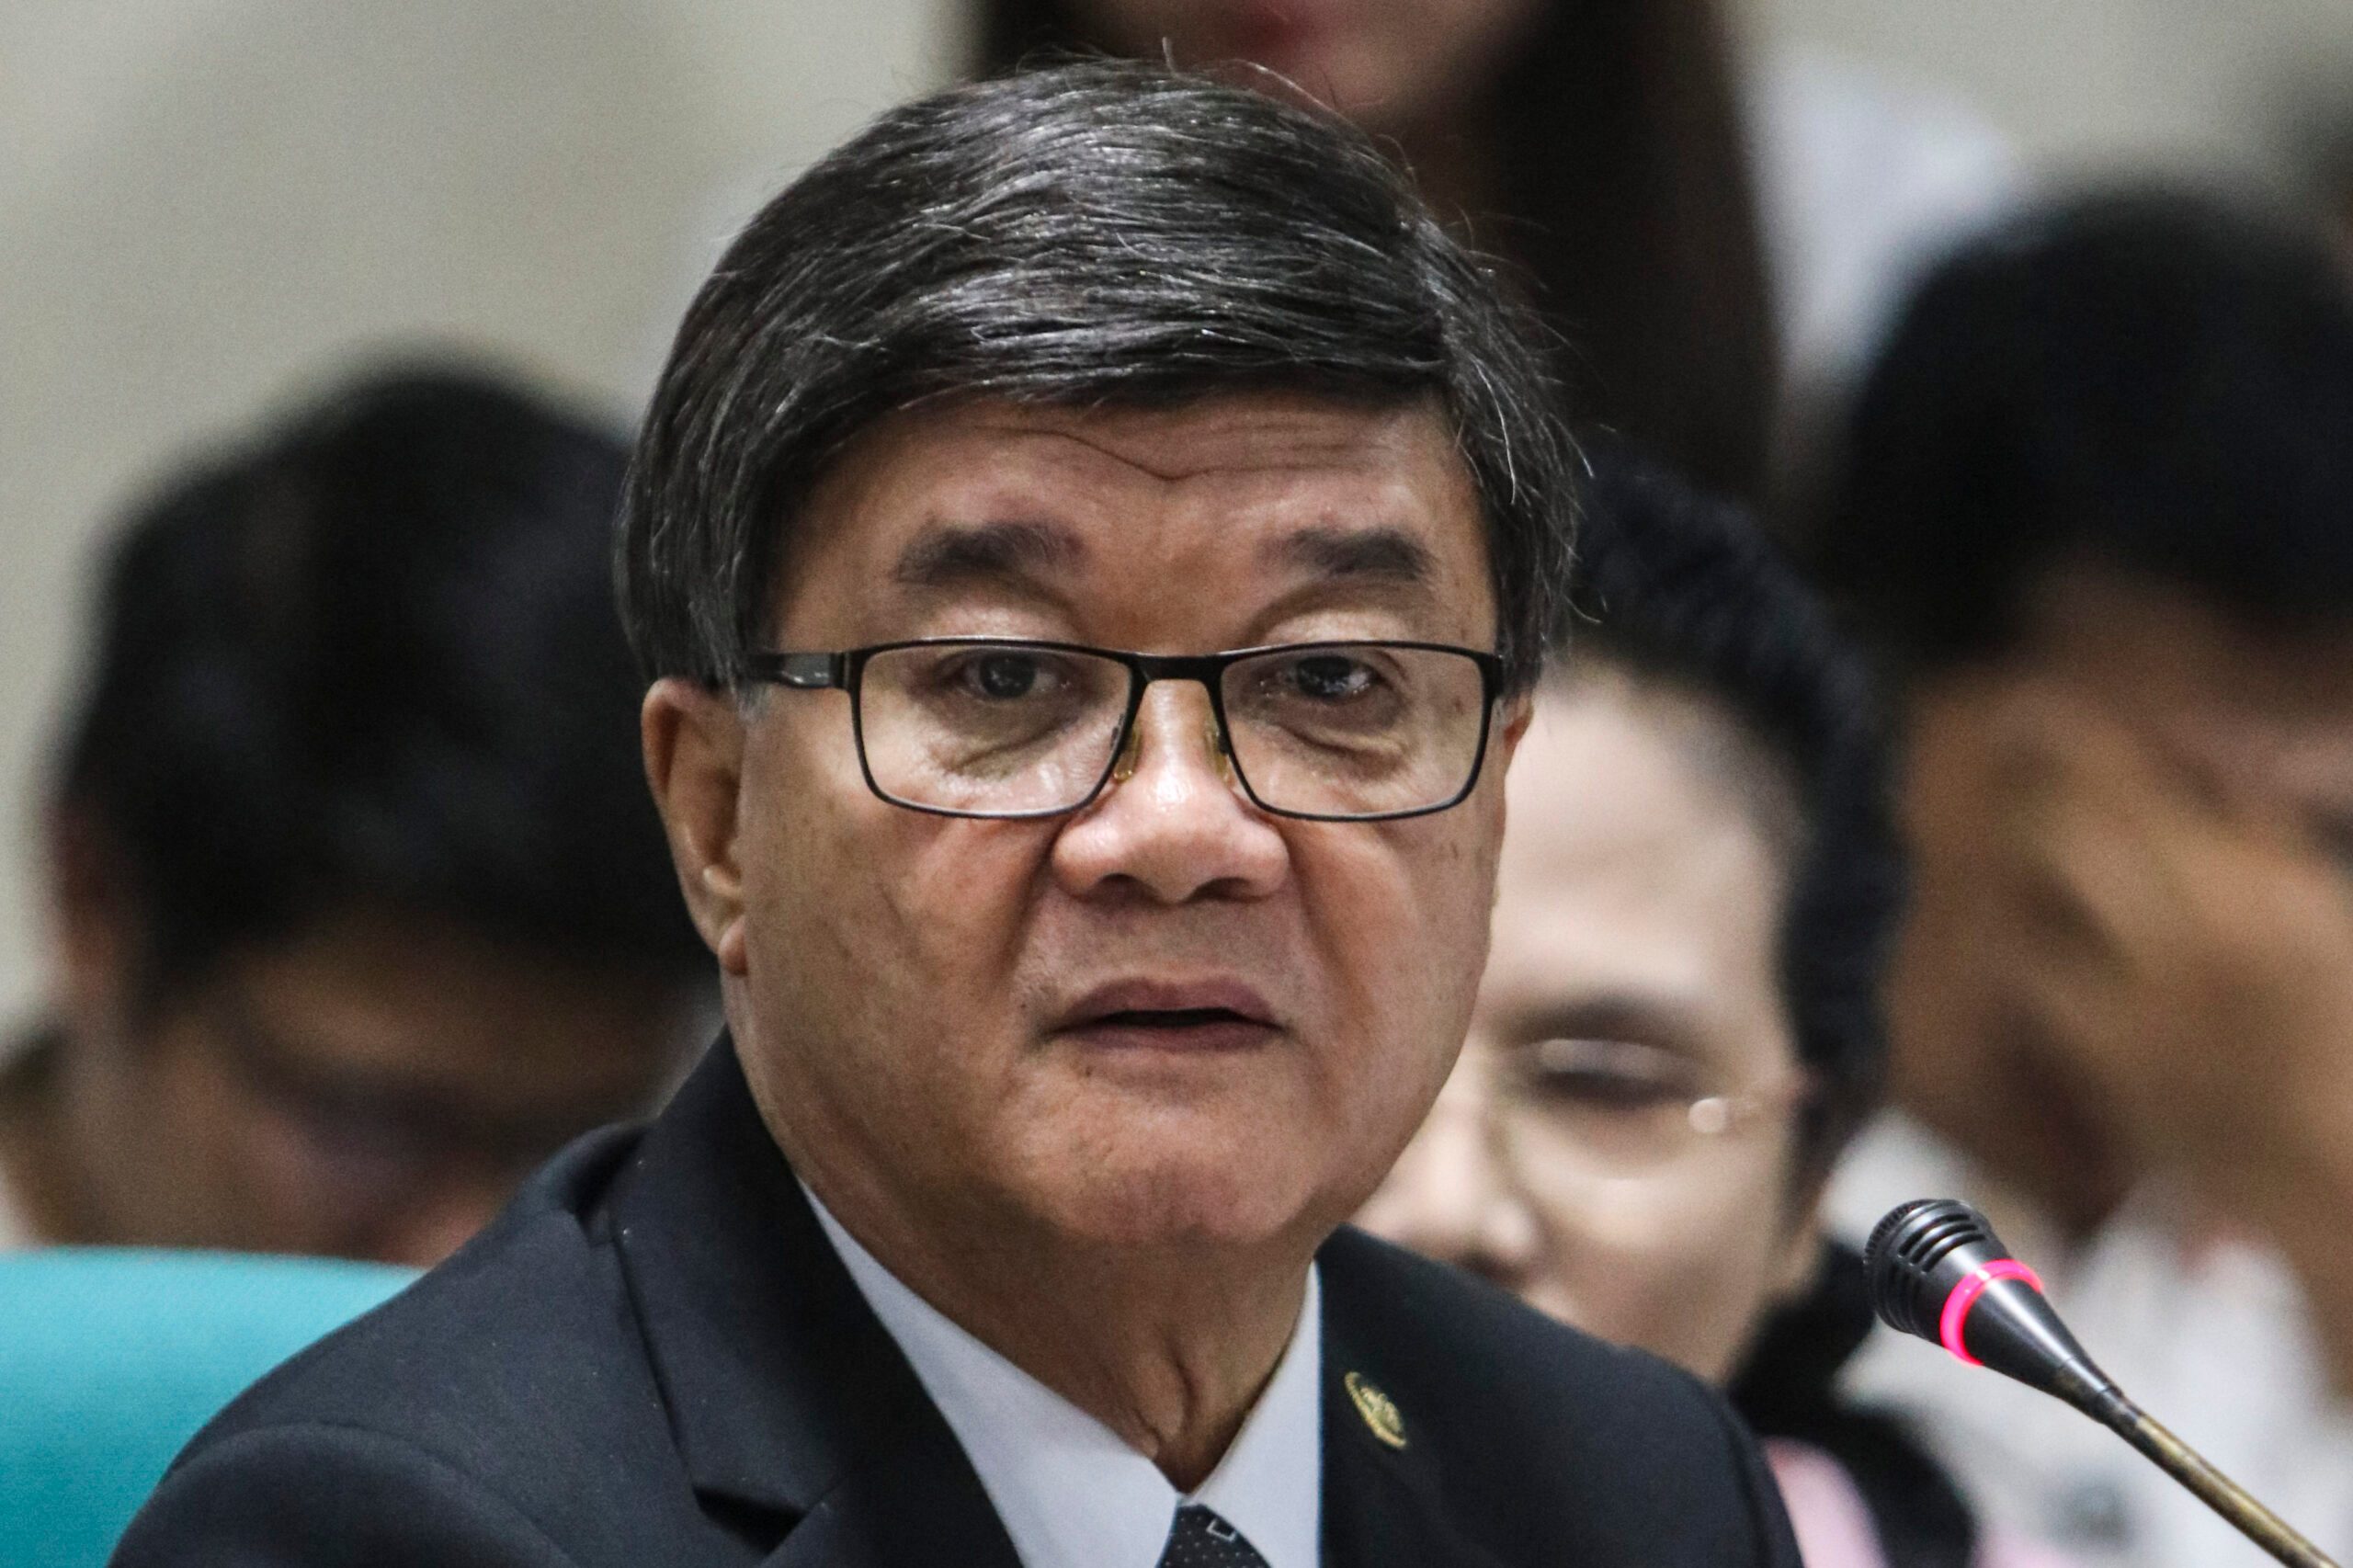 Senators on Aguirre resignation: Time for someone ‘credible, capable’ in DOJ